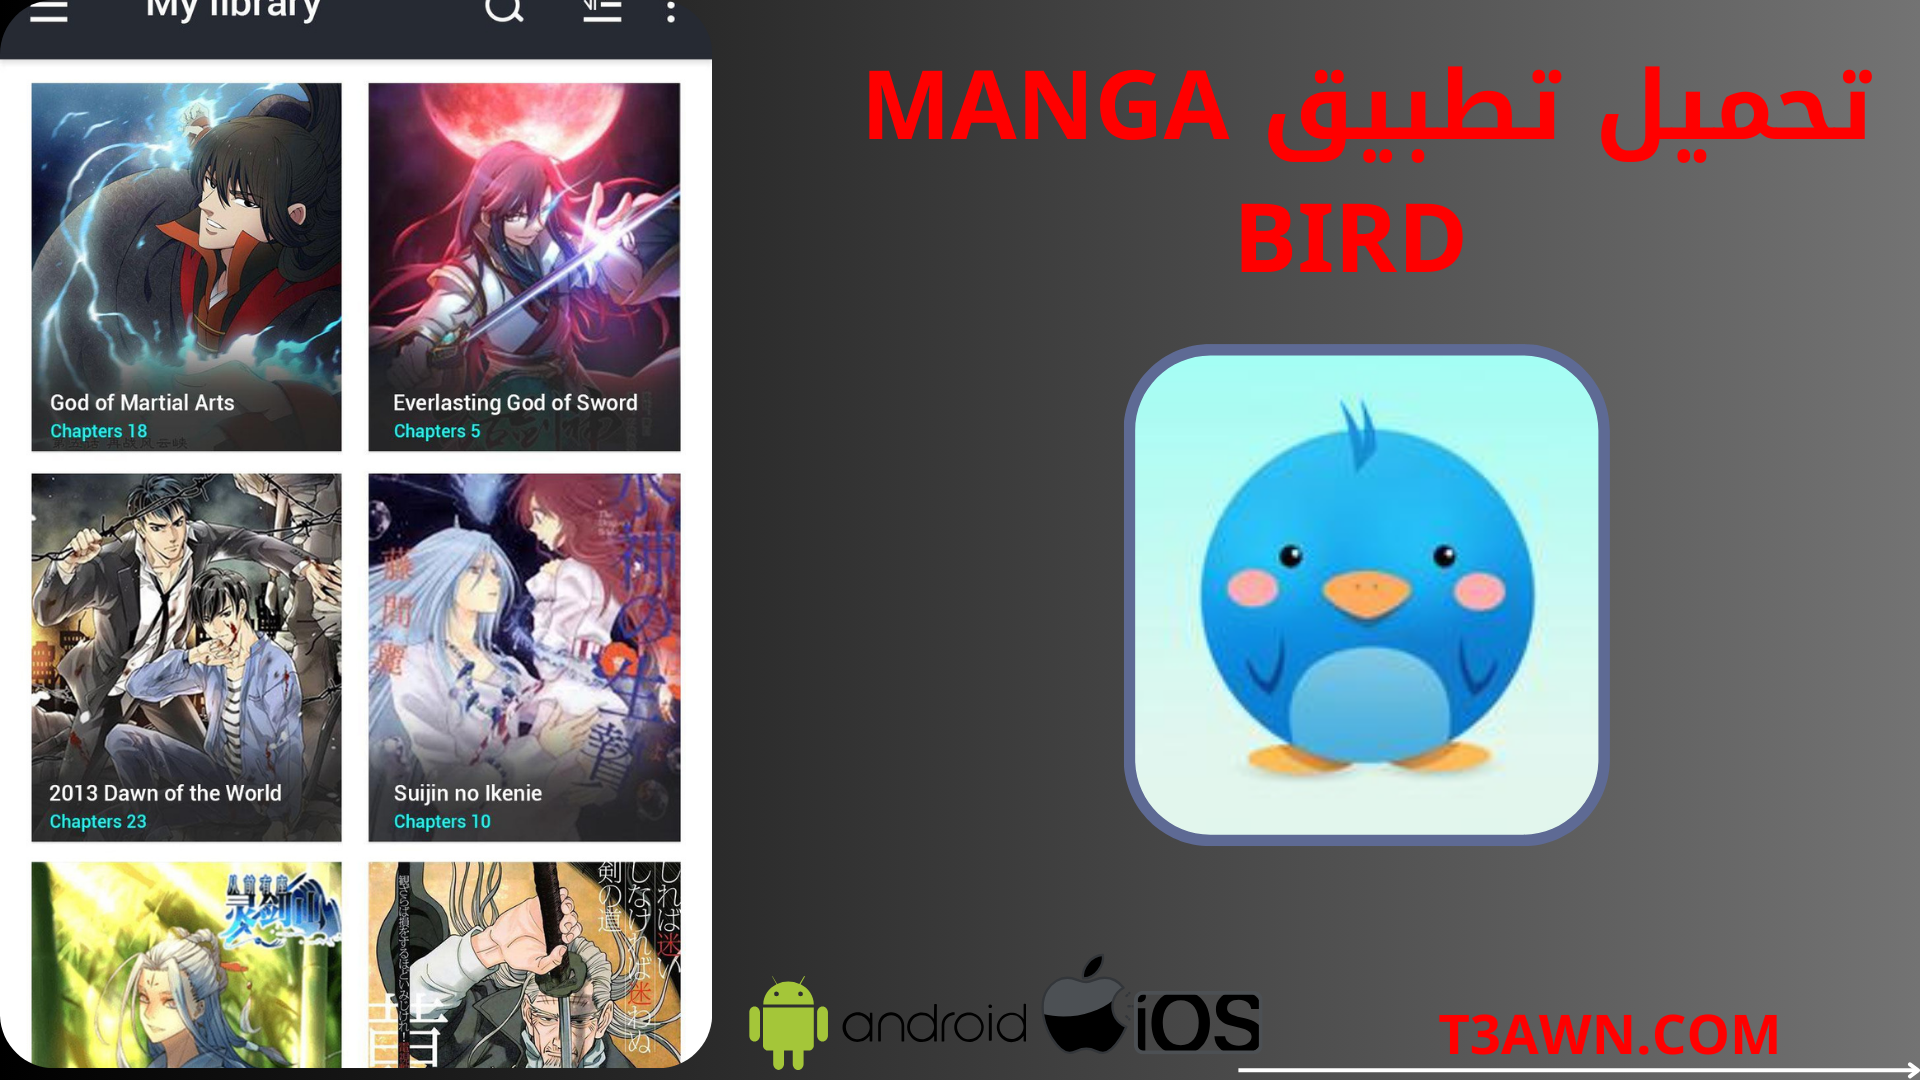 تحميل تطبيق manga bird